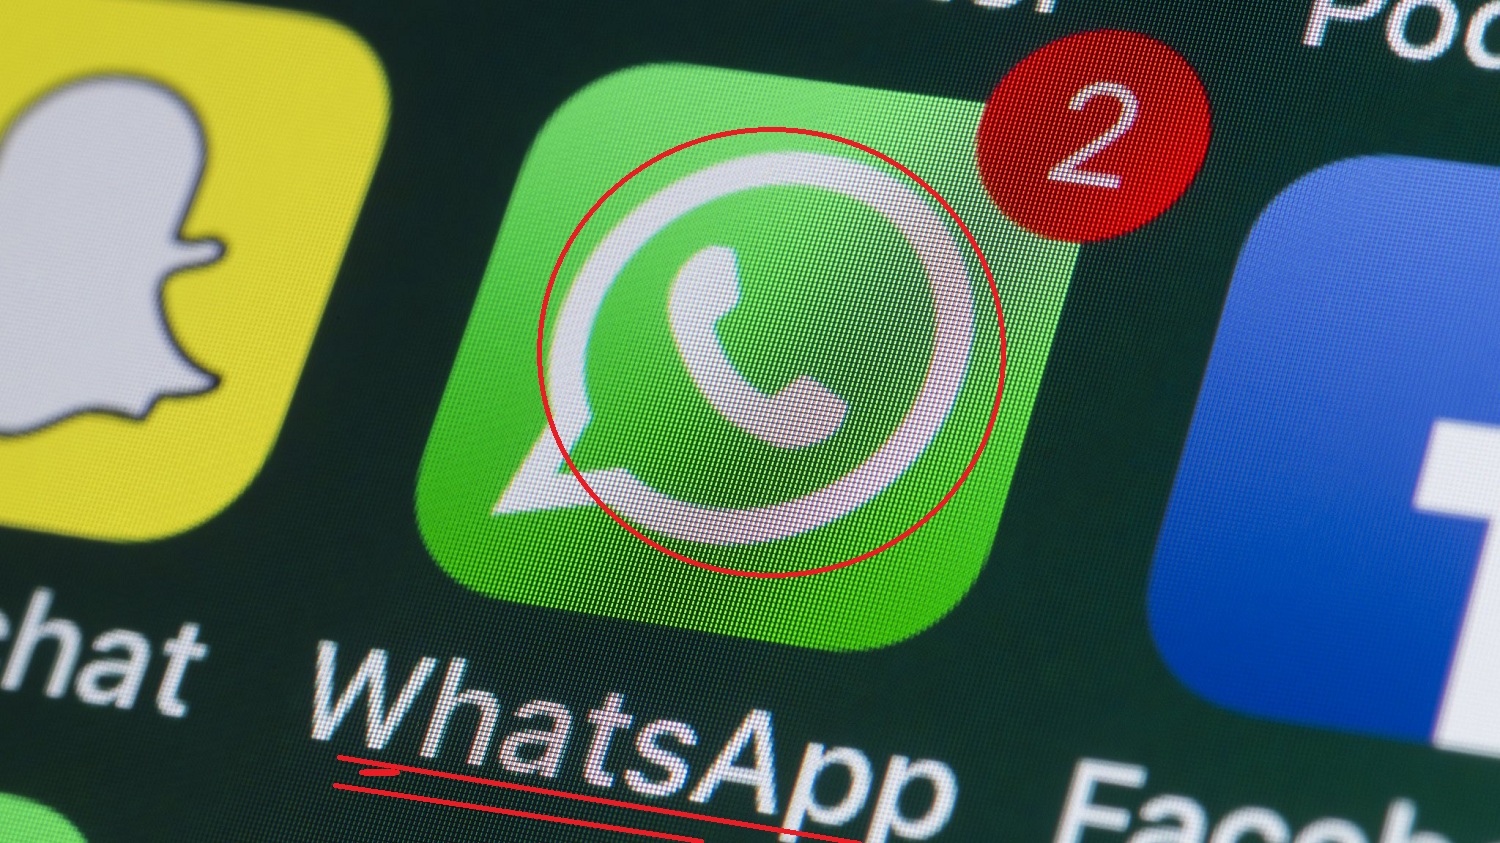 ثلاث إعدادات في واتساب WhatsApp يجب تفعيلها فوراً لحمايتك .. تعرف عليها